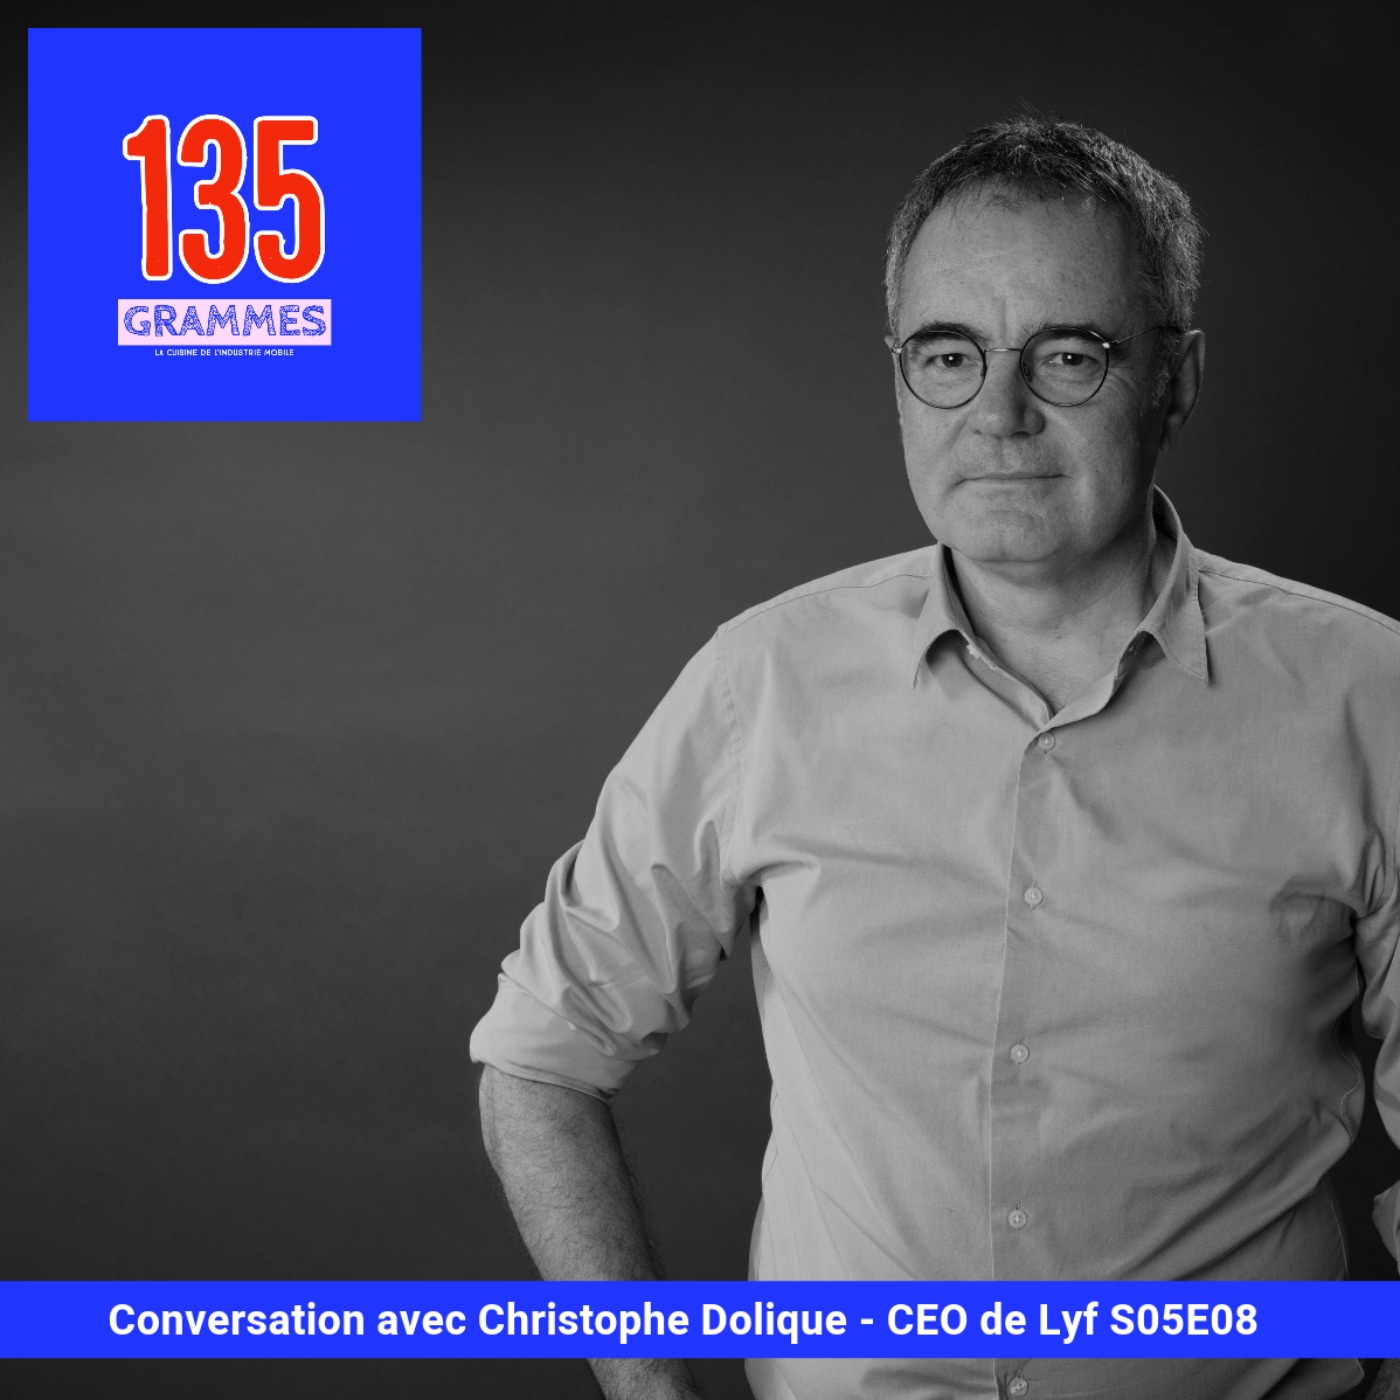 Conversation avec Christophe Dolique, CEO de Lyf